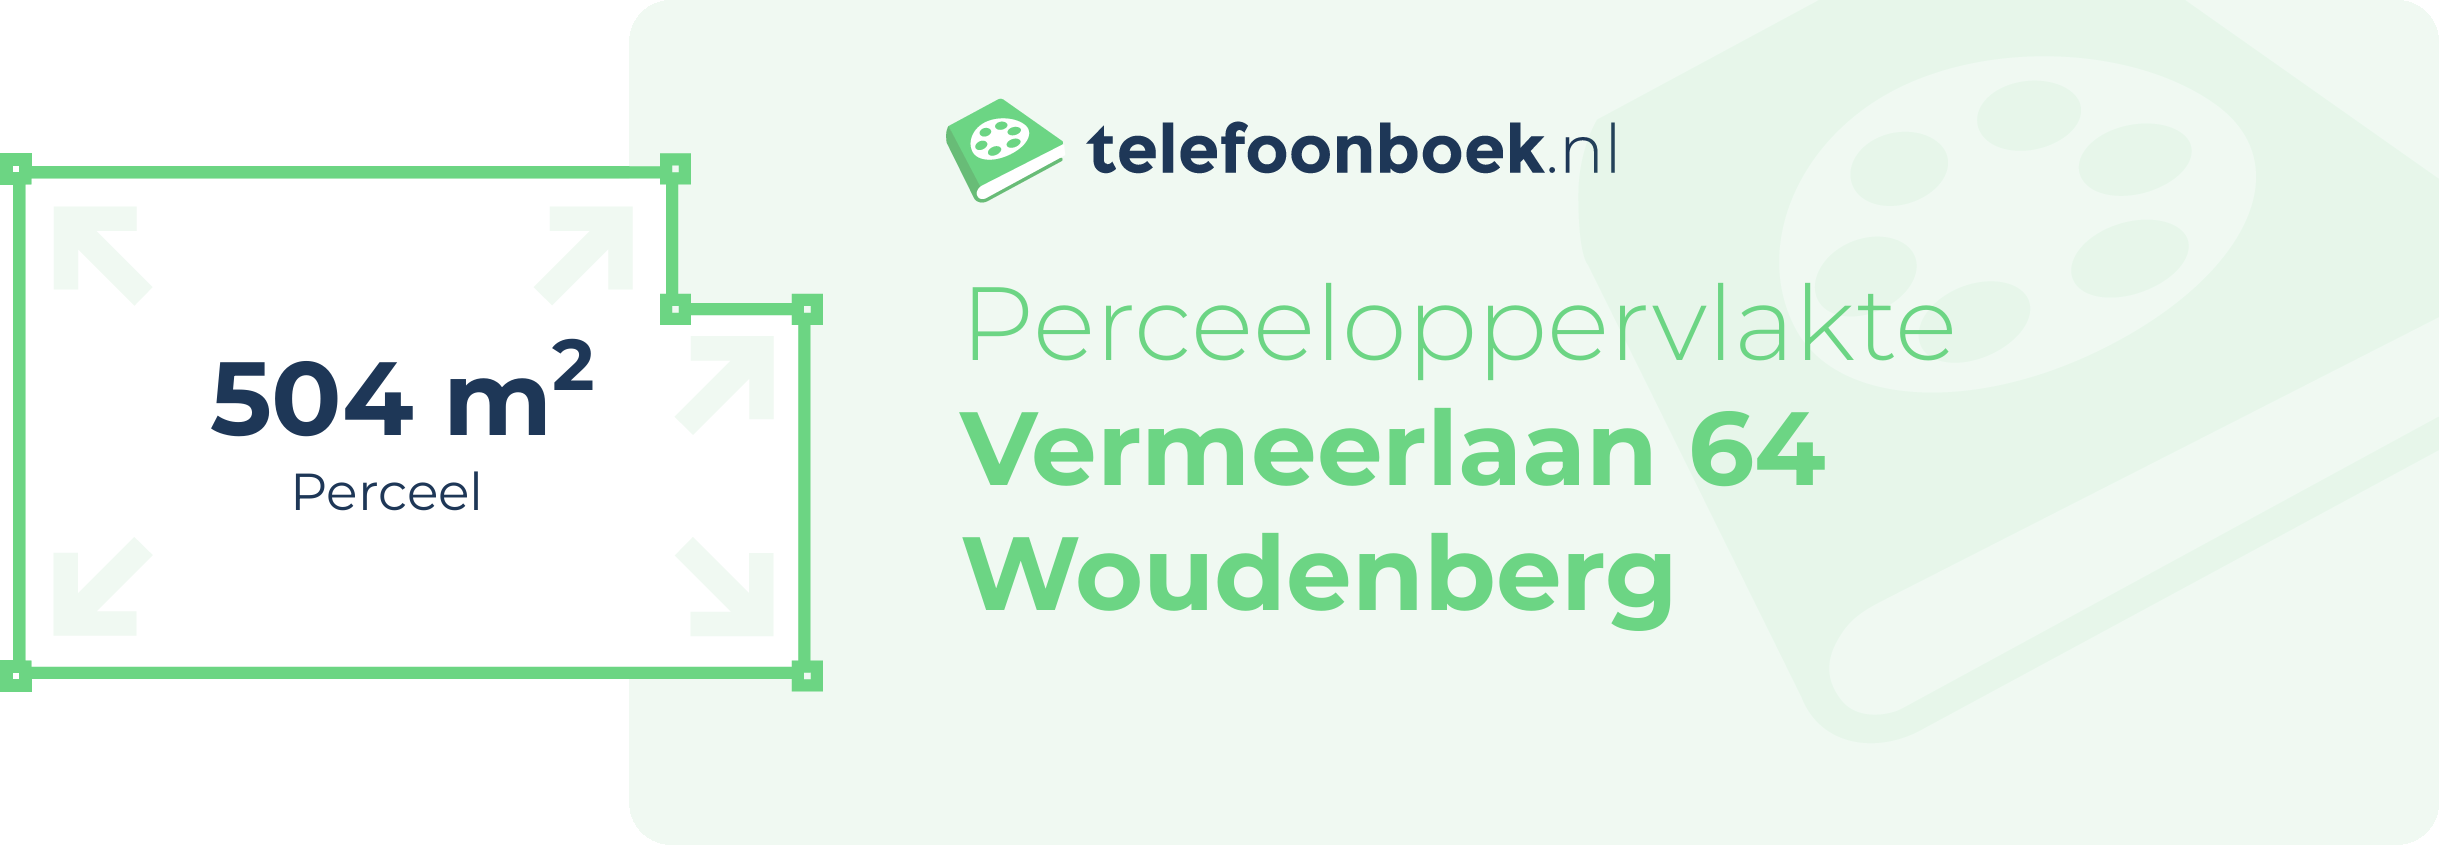 Perceeloppervlakte Vermeerlaan 64 Woudenberg